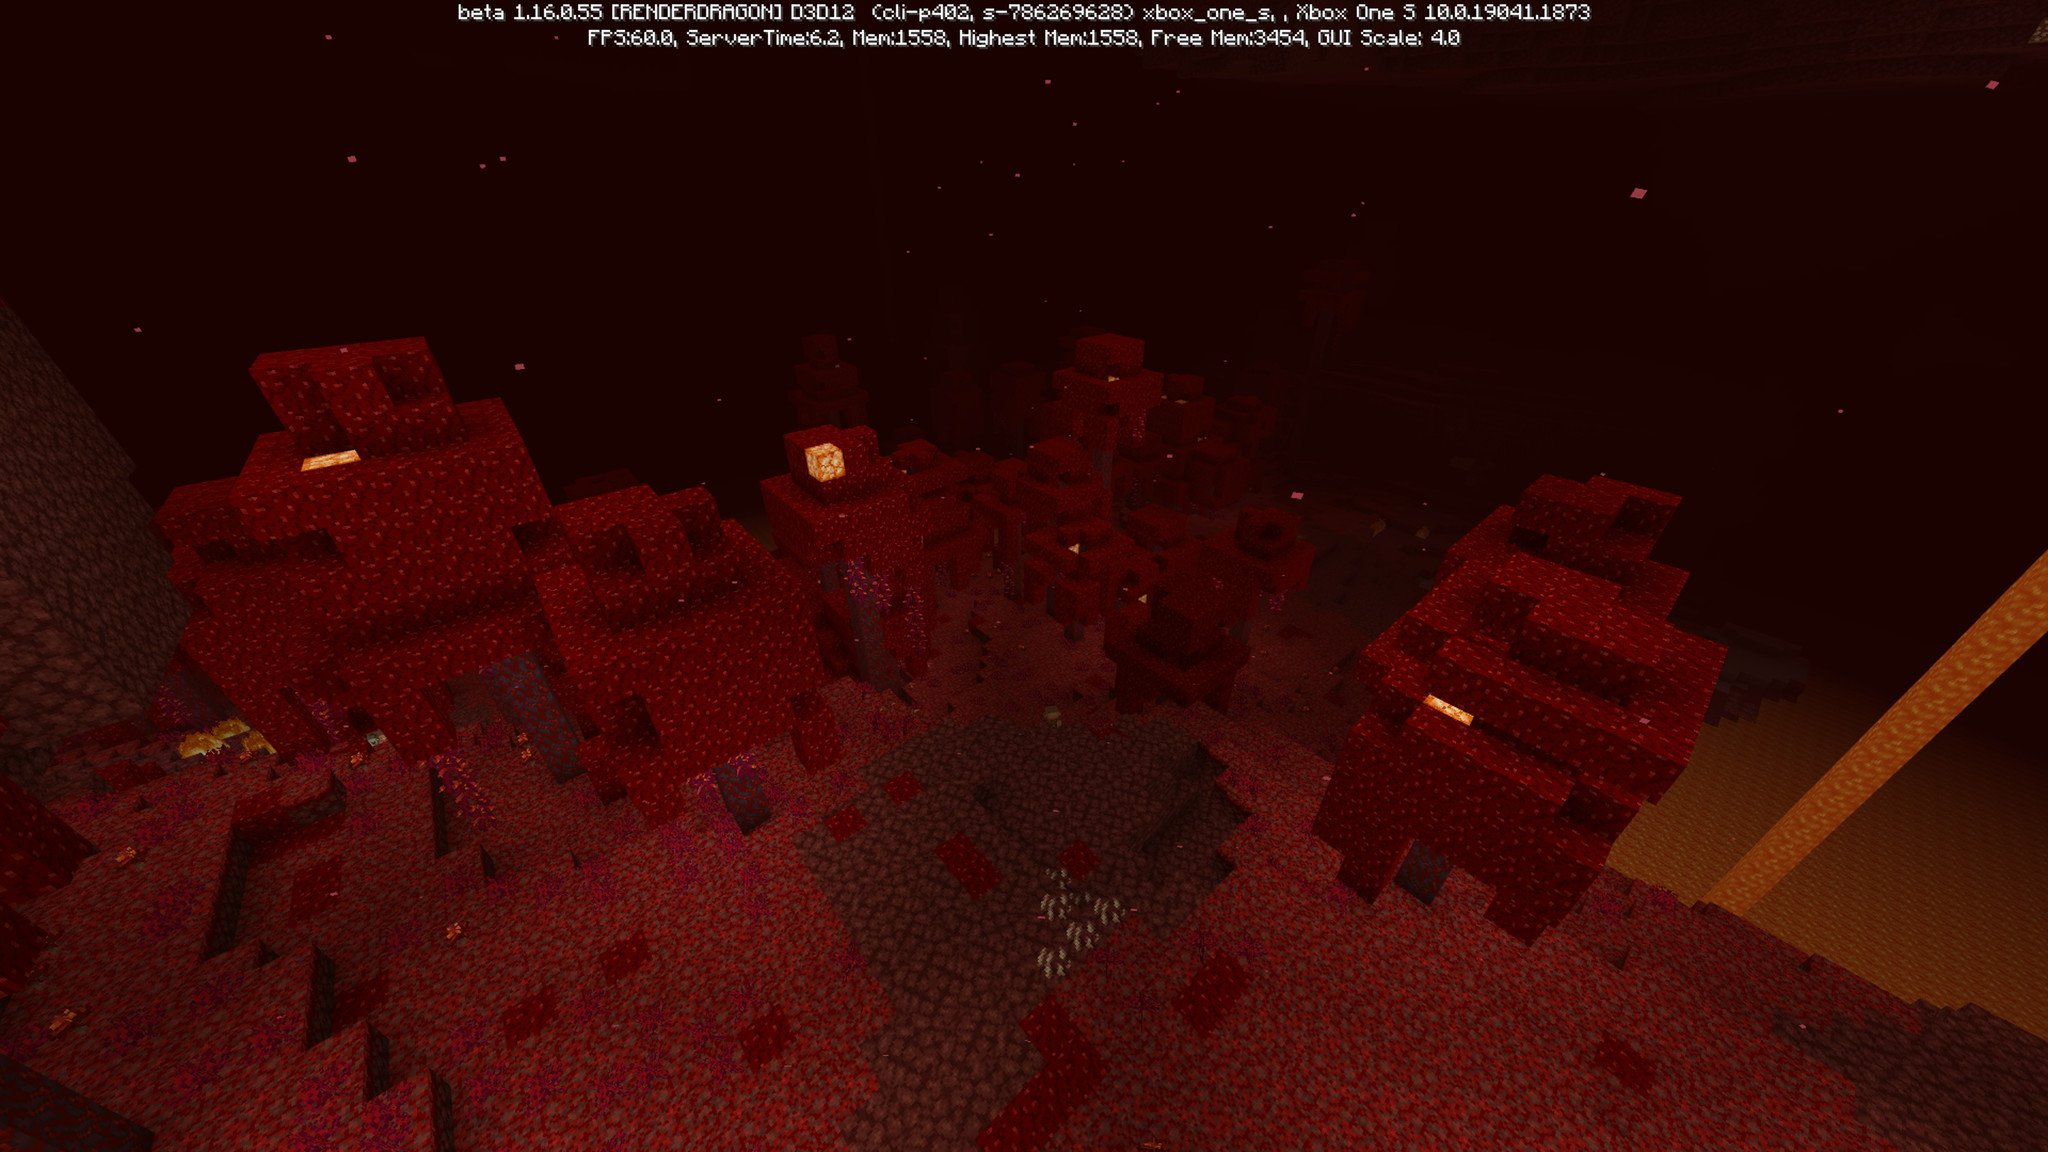 minecraft-nether-update-beta-crimson-forest-01.jpg